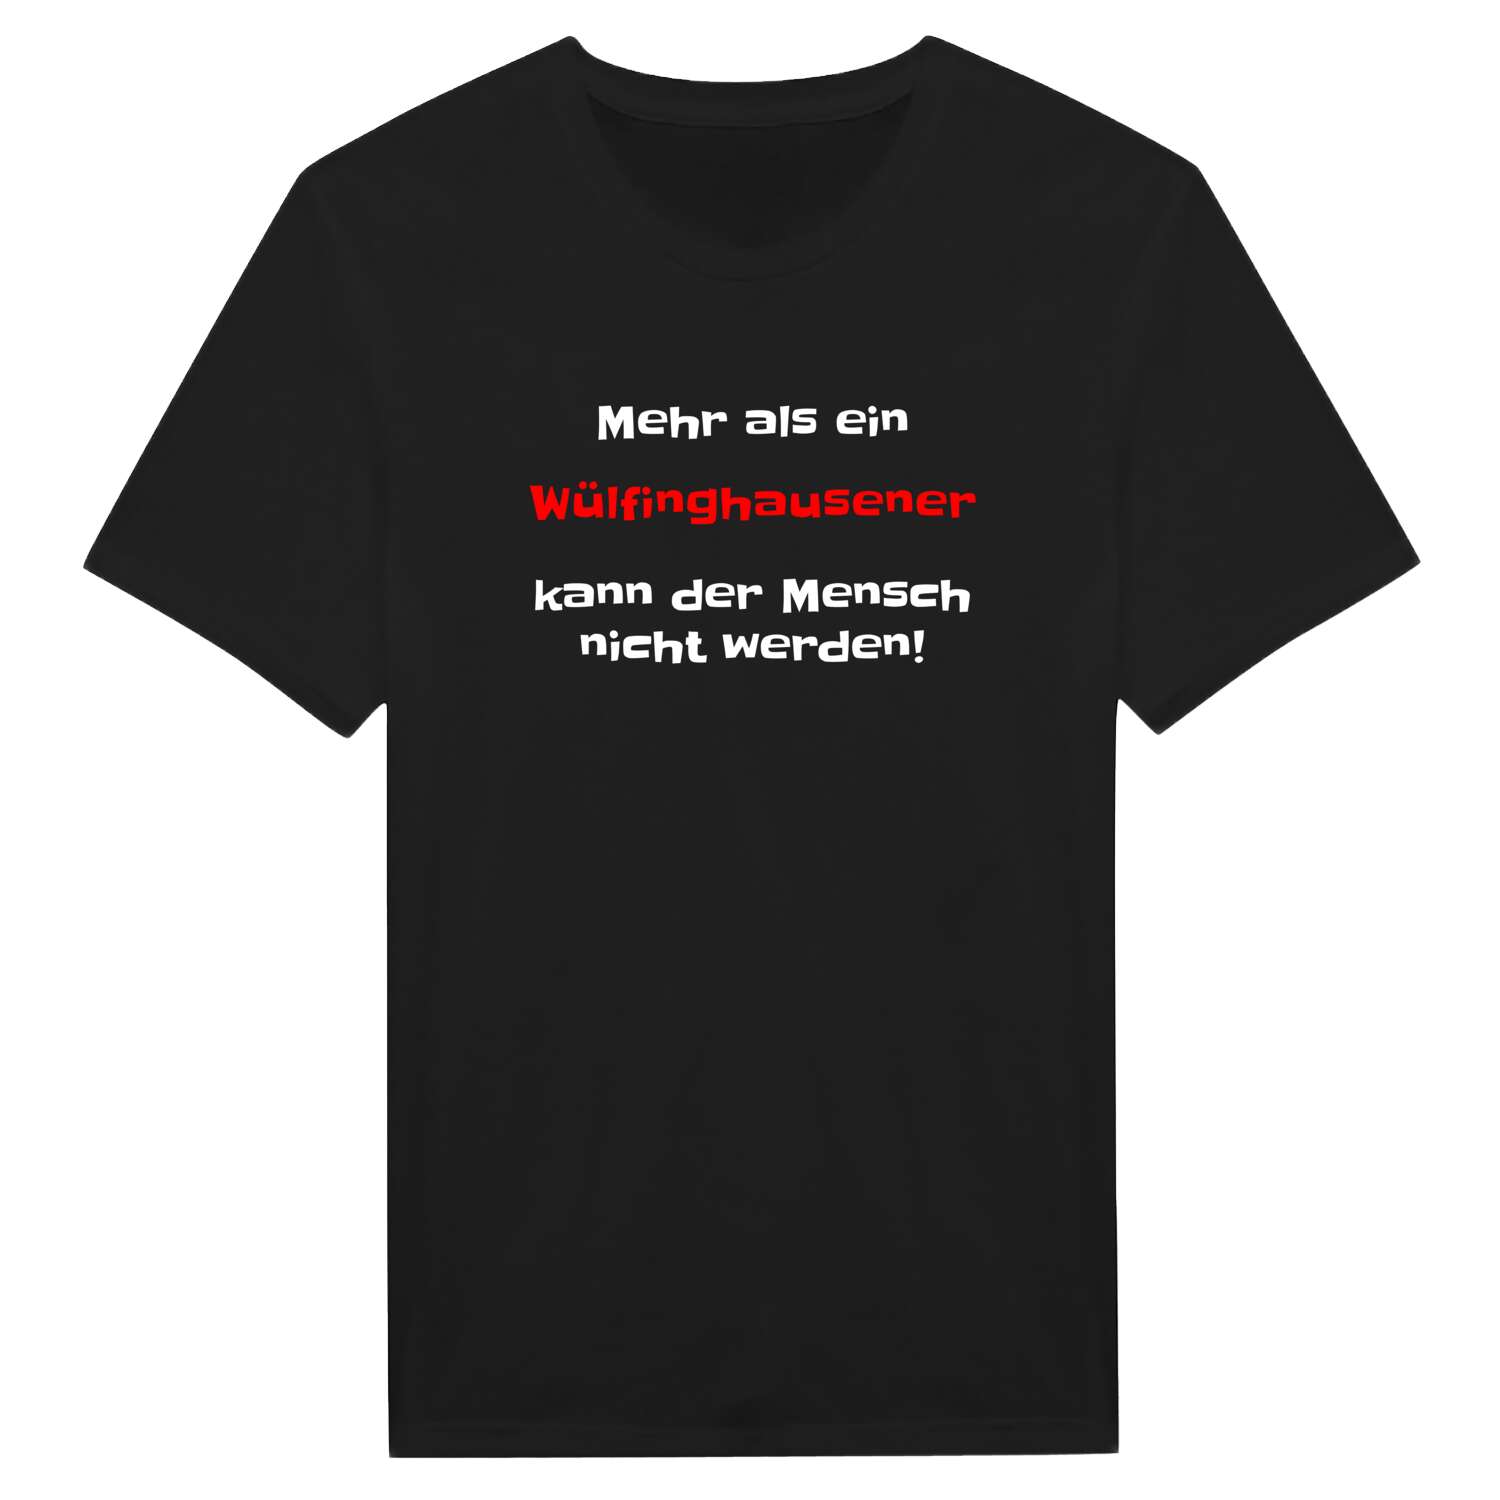 Wülfinghausen T-Shirt »Mehr als ein«